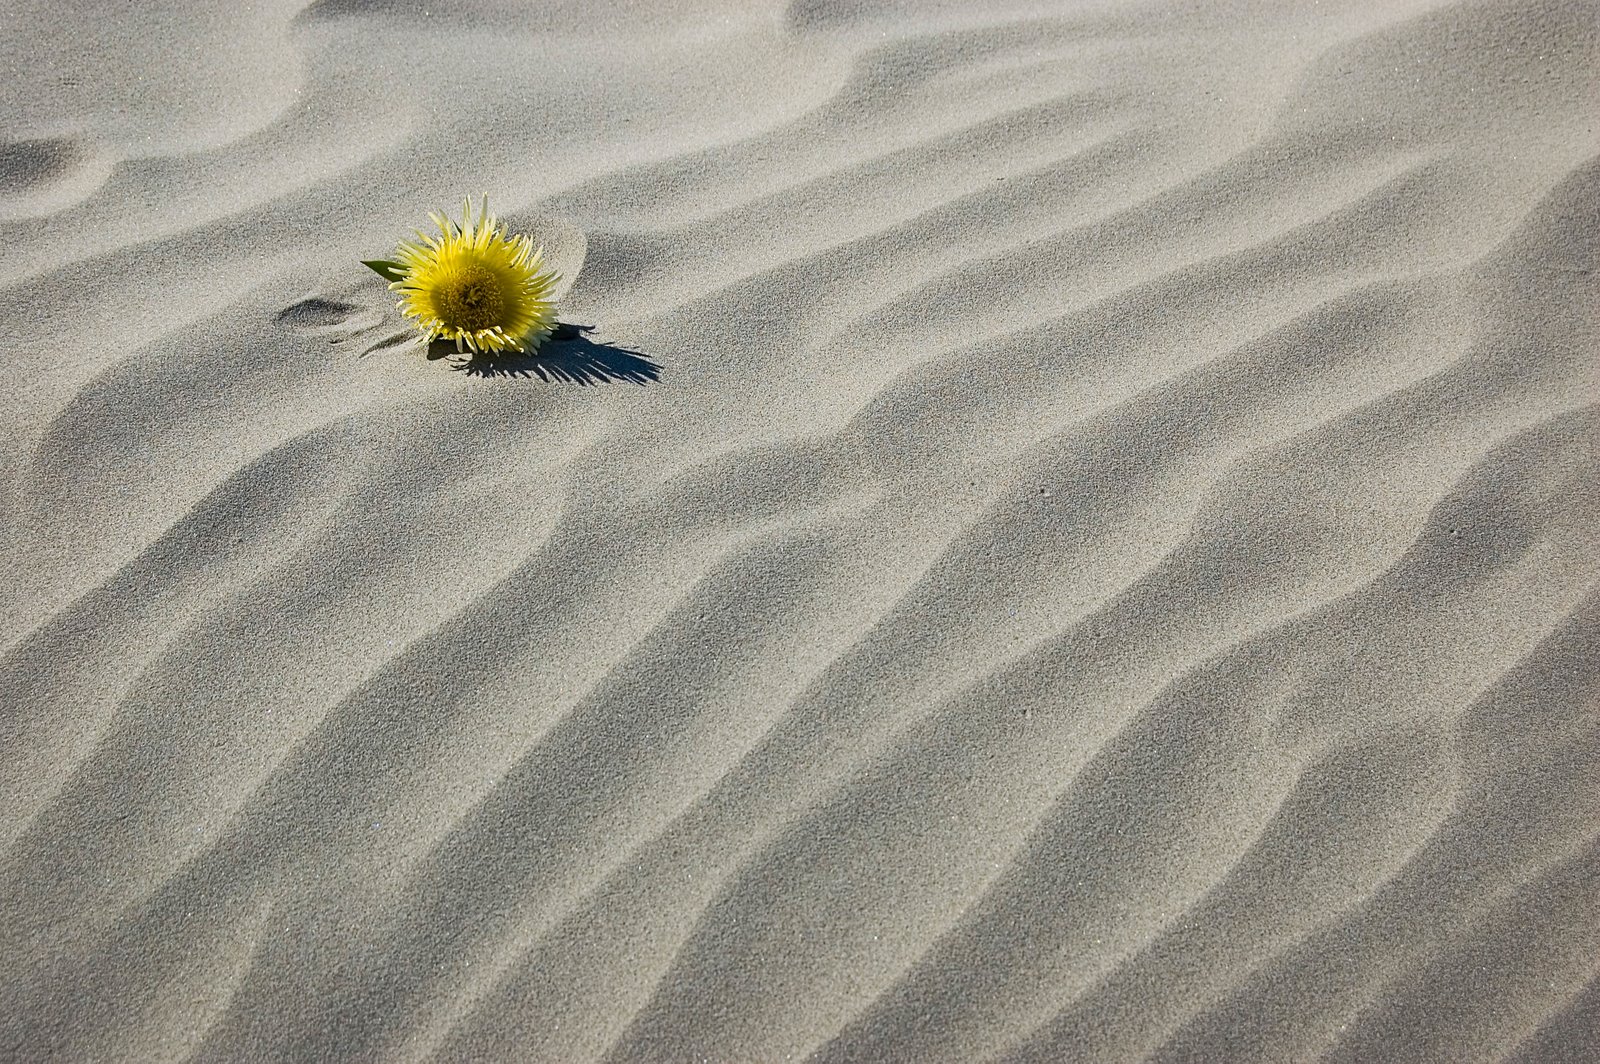 [sand+flower.jpg]